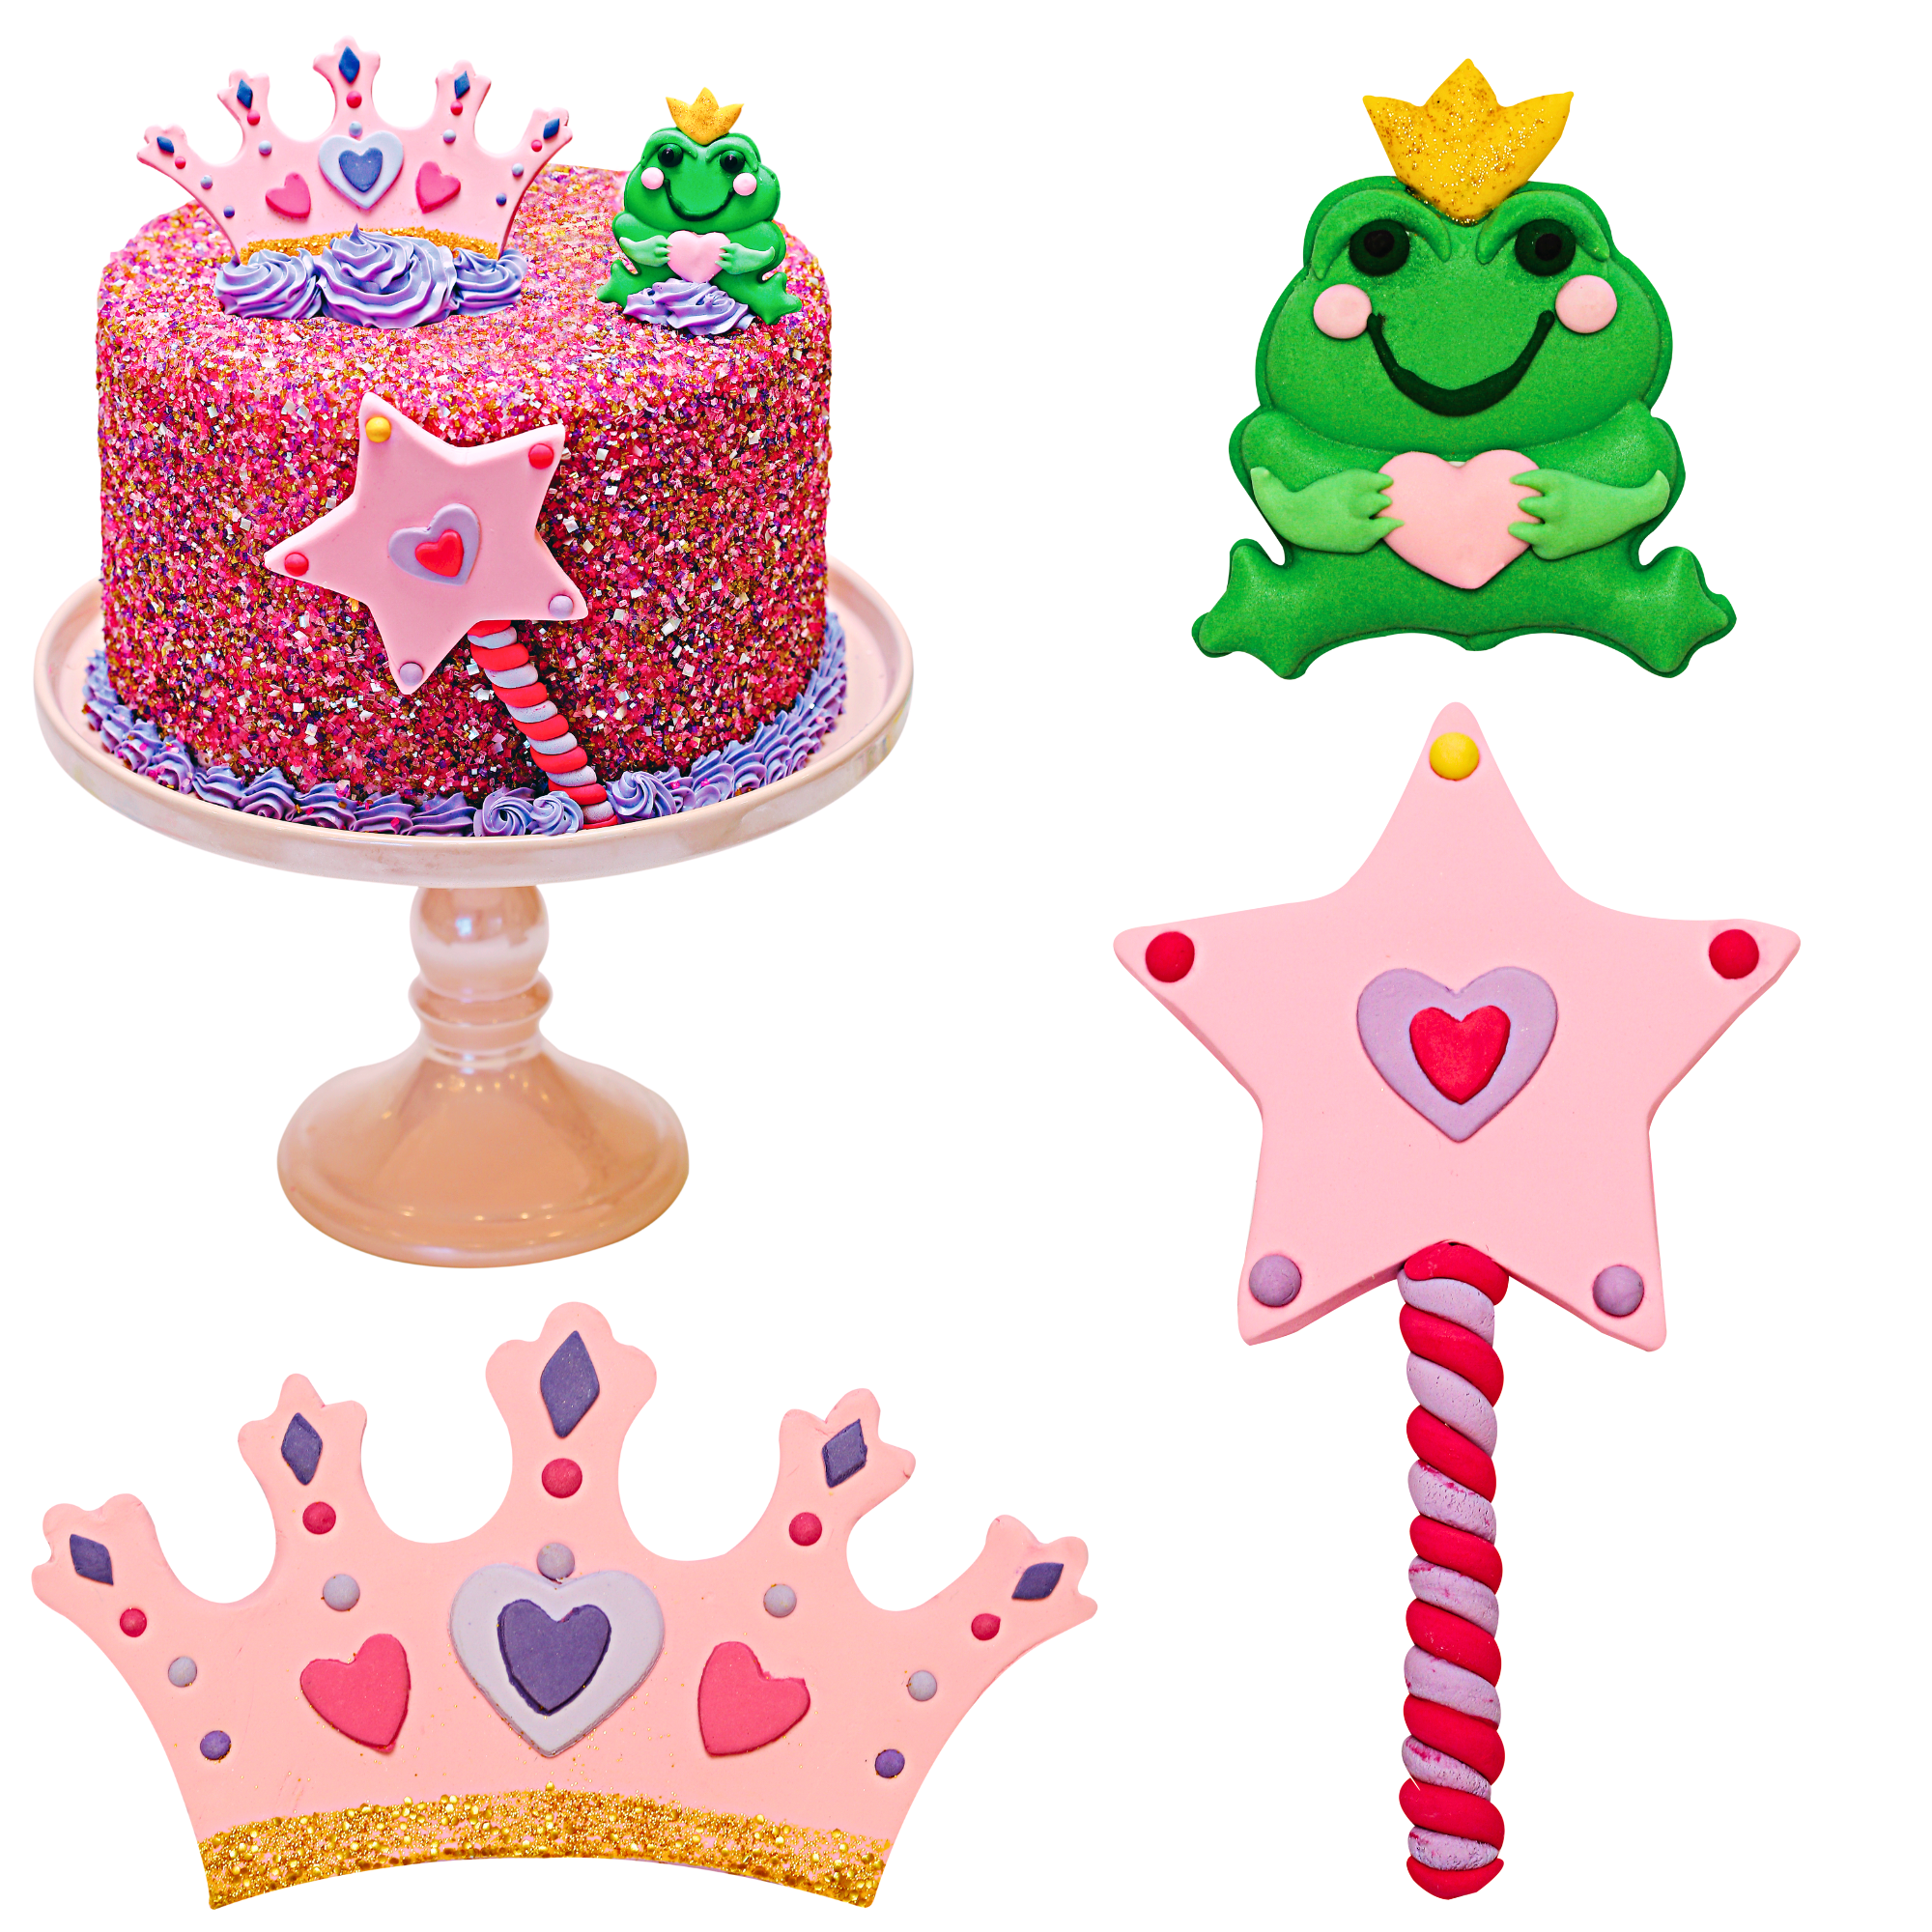 Princess & Frog Designer Cake Decor